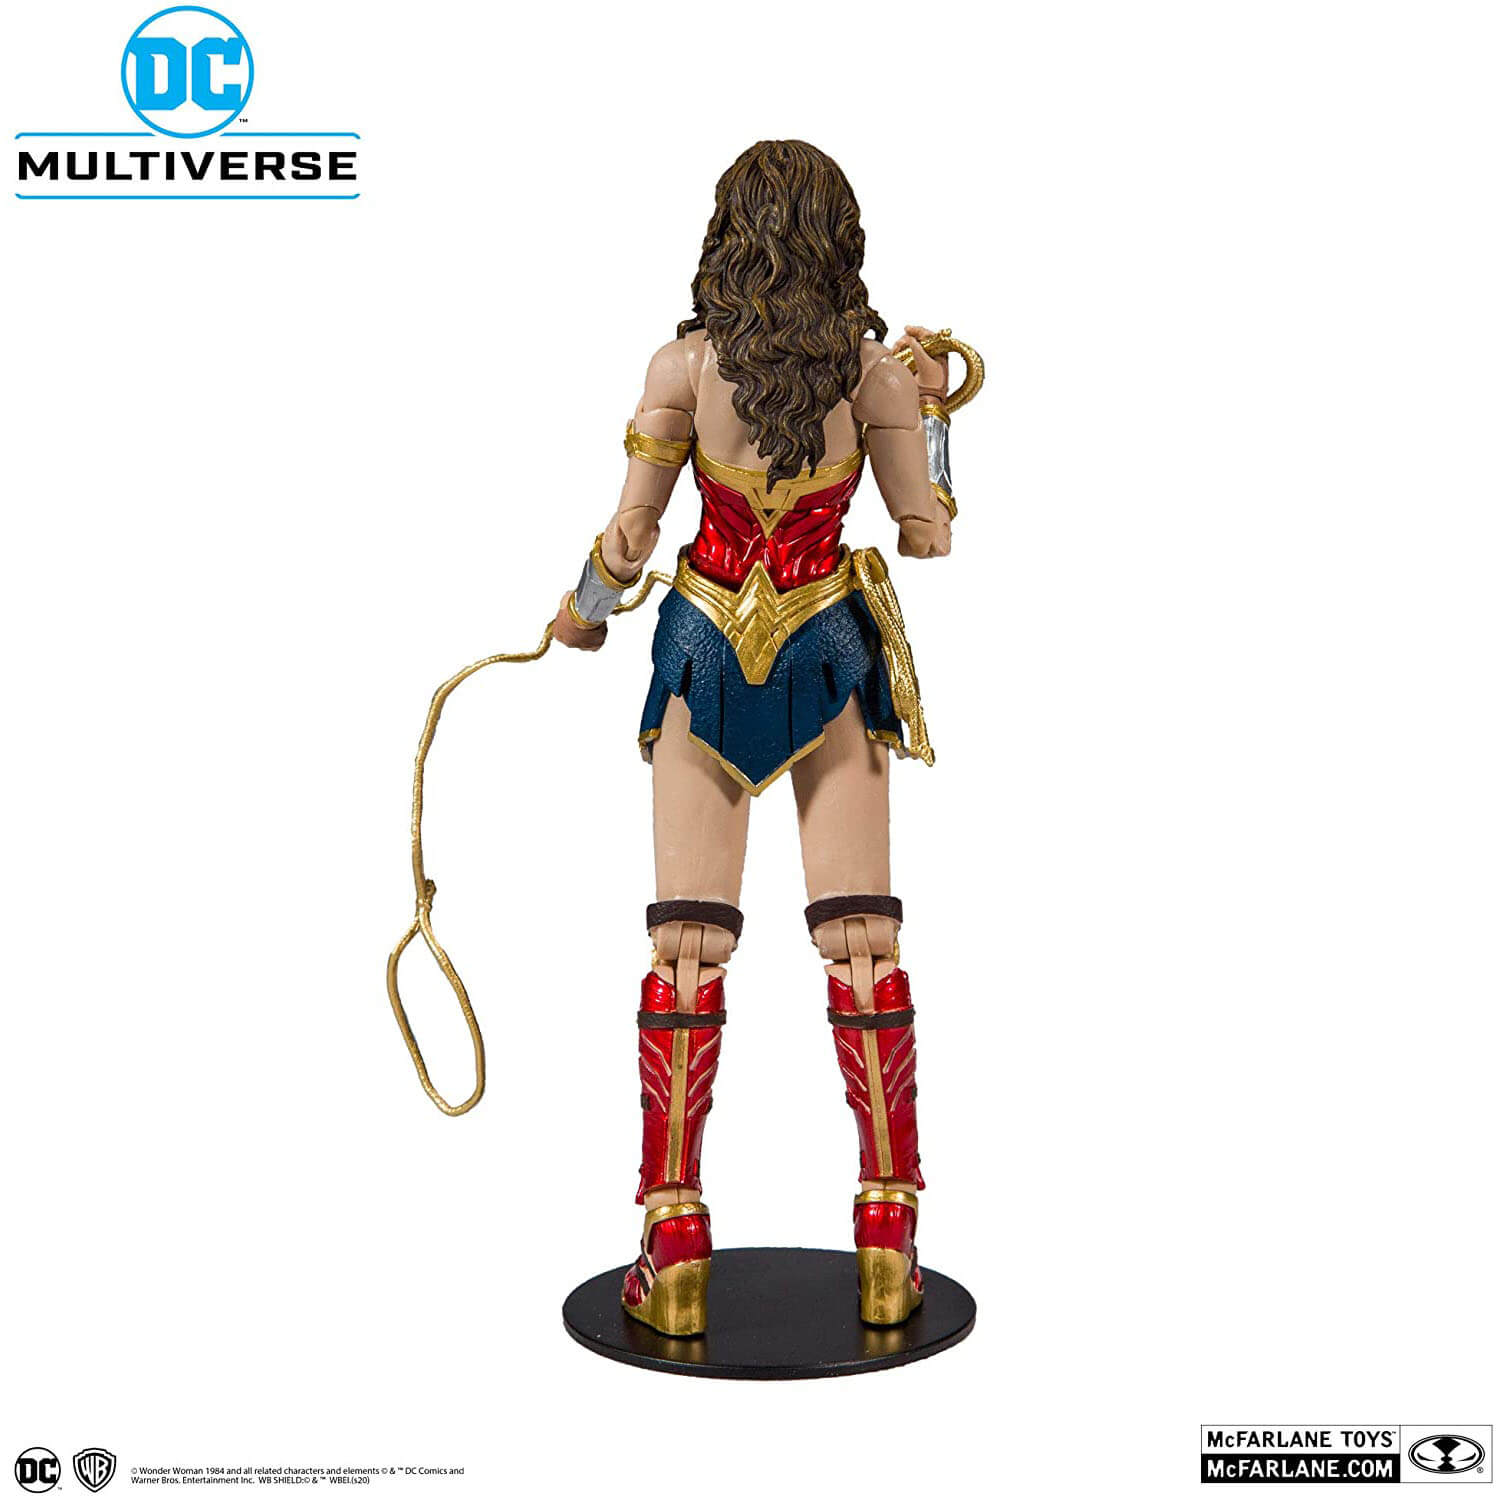 DC Multiverse Wonder Woman 1984 Action Figure